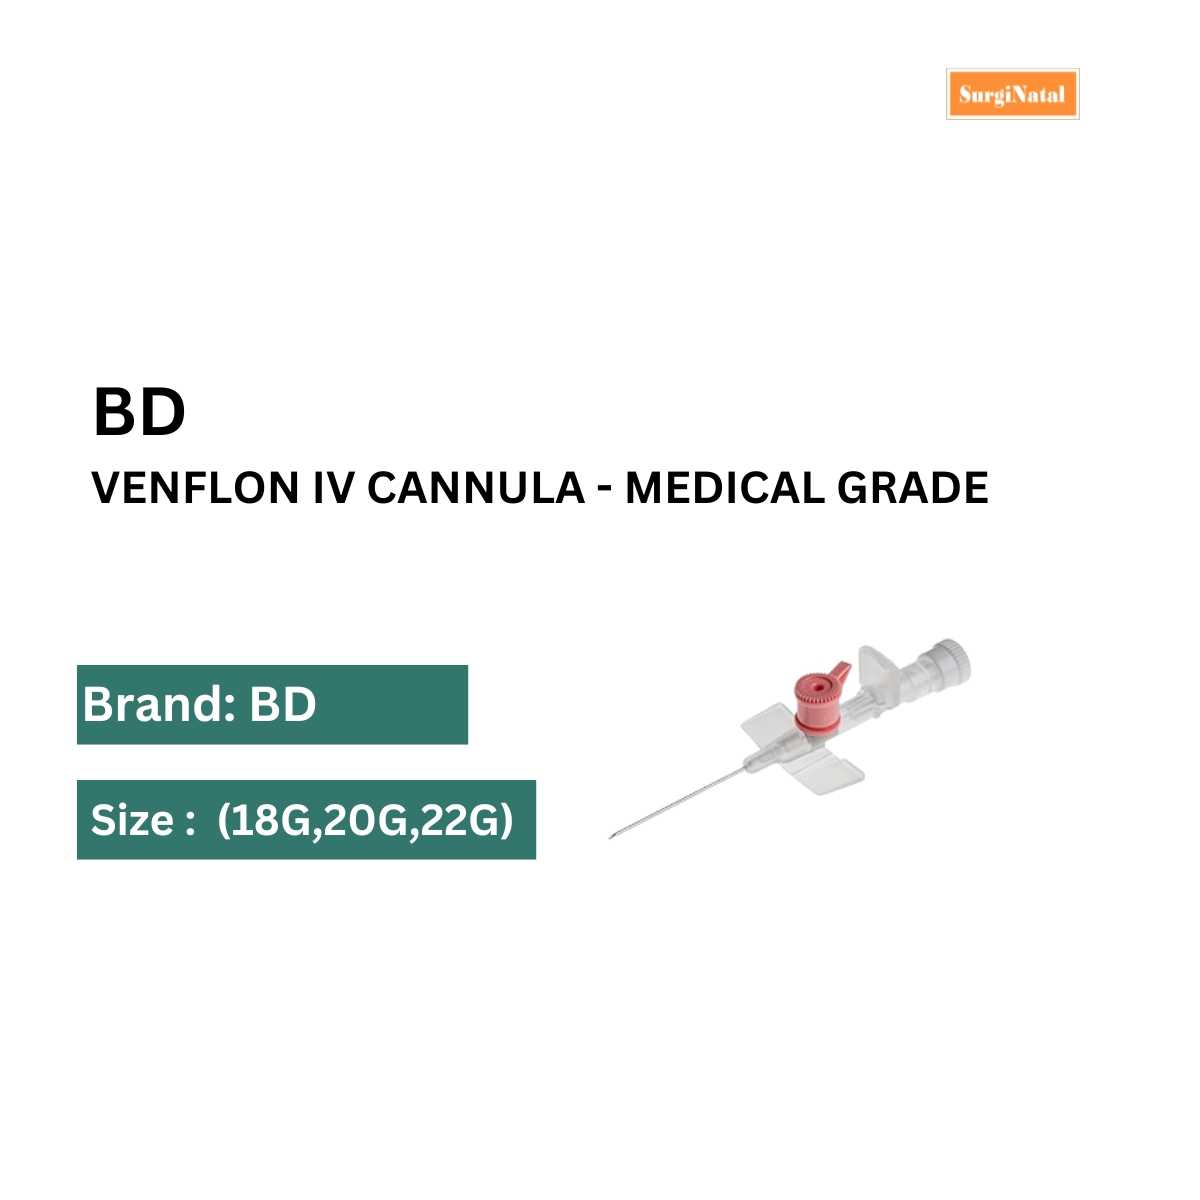 bd venflon iv cannula - medical grade